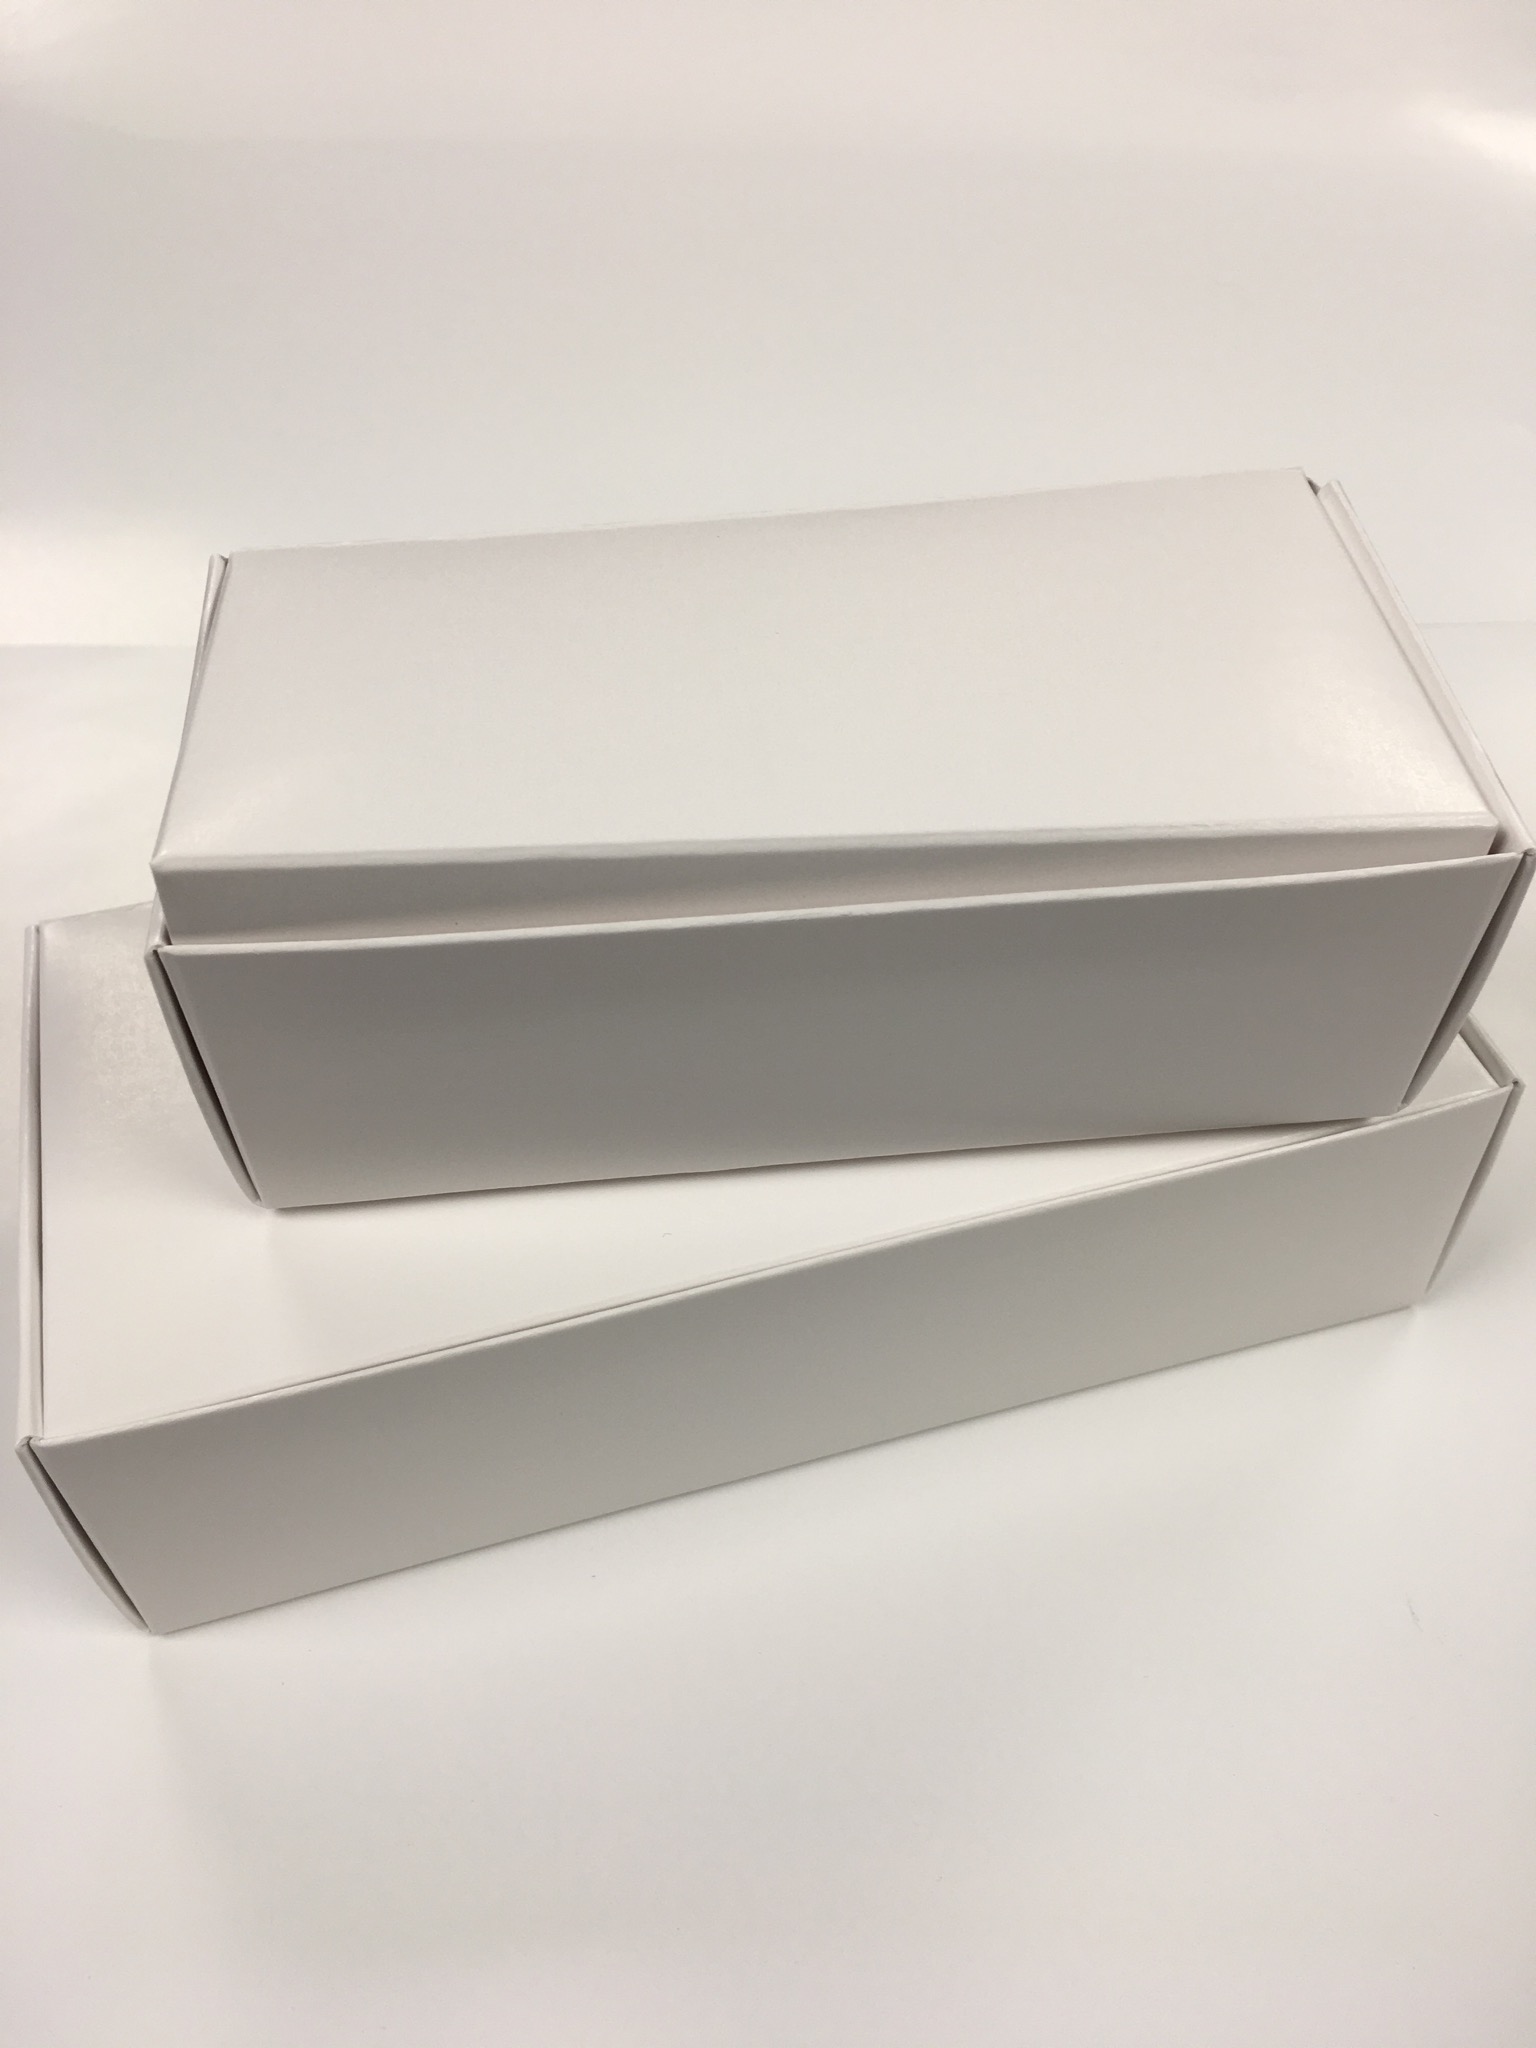 (A) 1# WHITE BOXES-250 CT